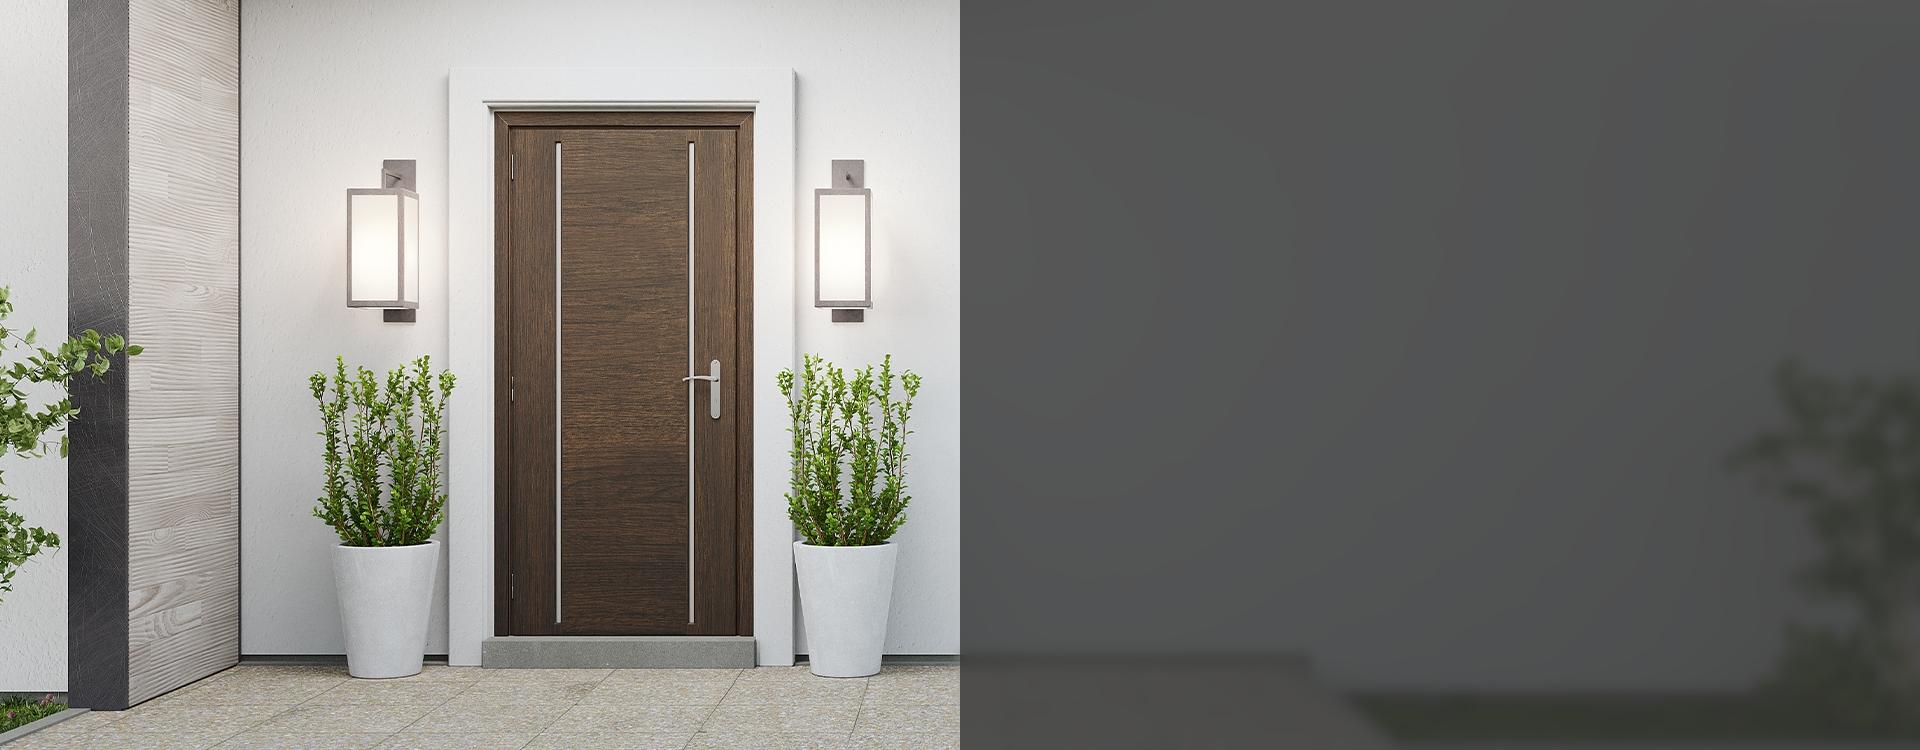 Slide B - 3 - nowoczesne, drewniane drzwi